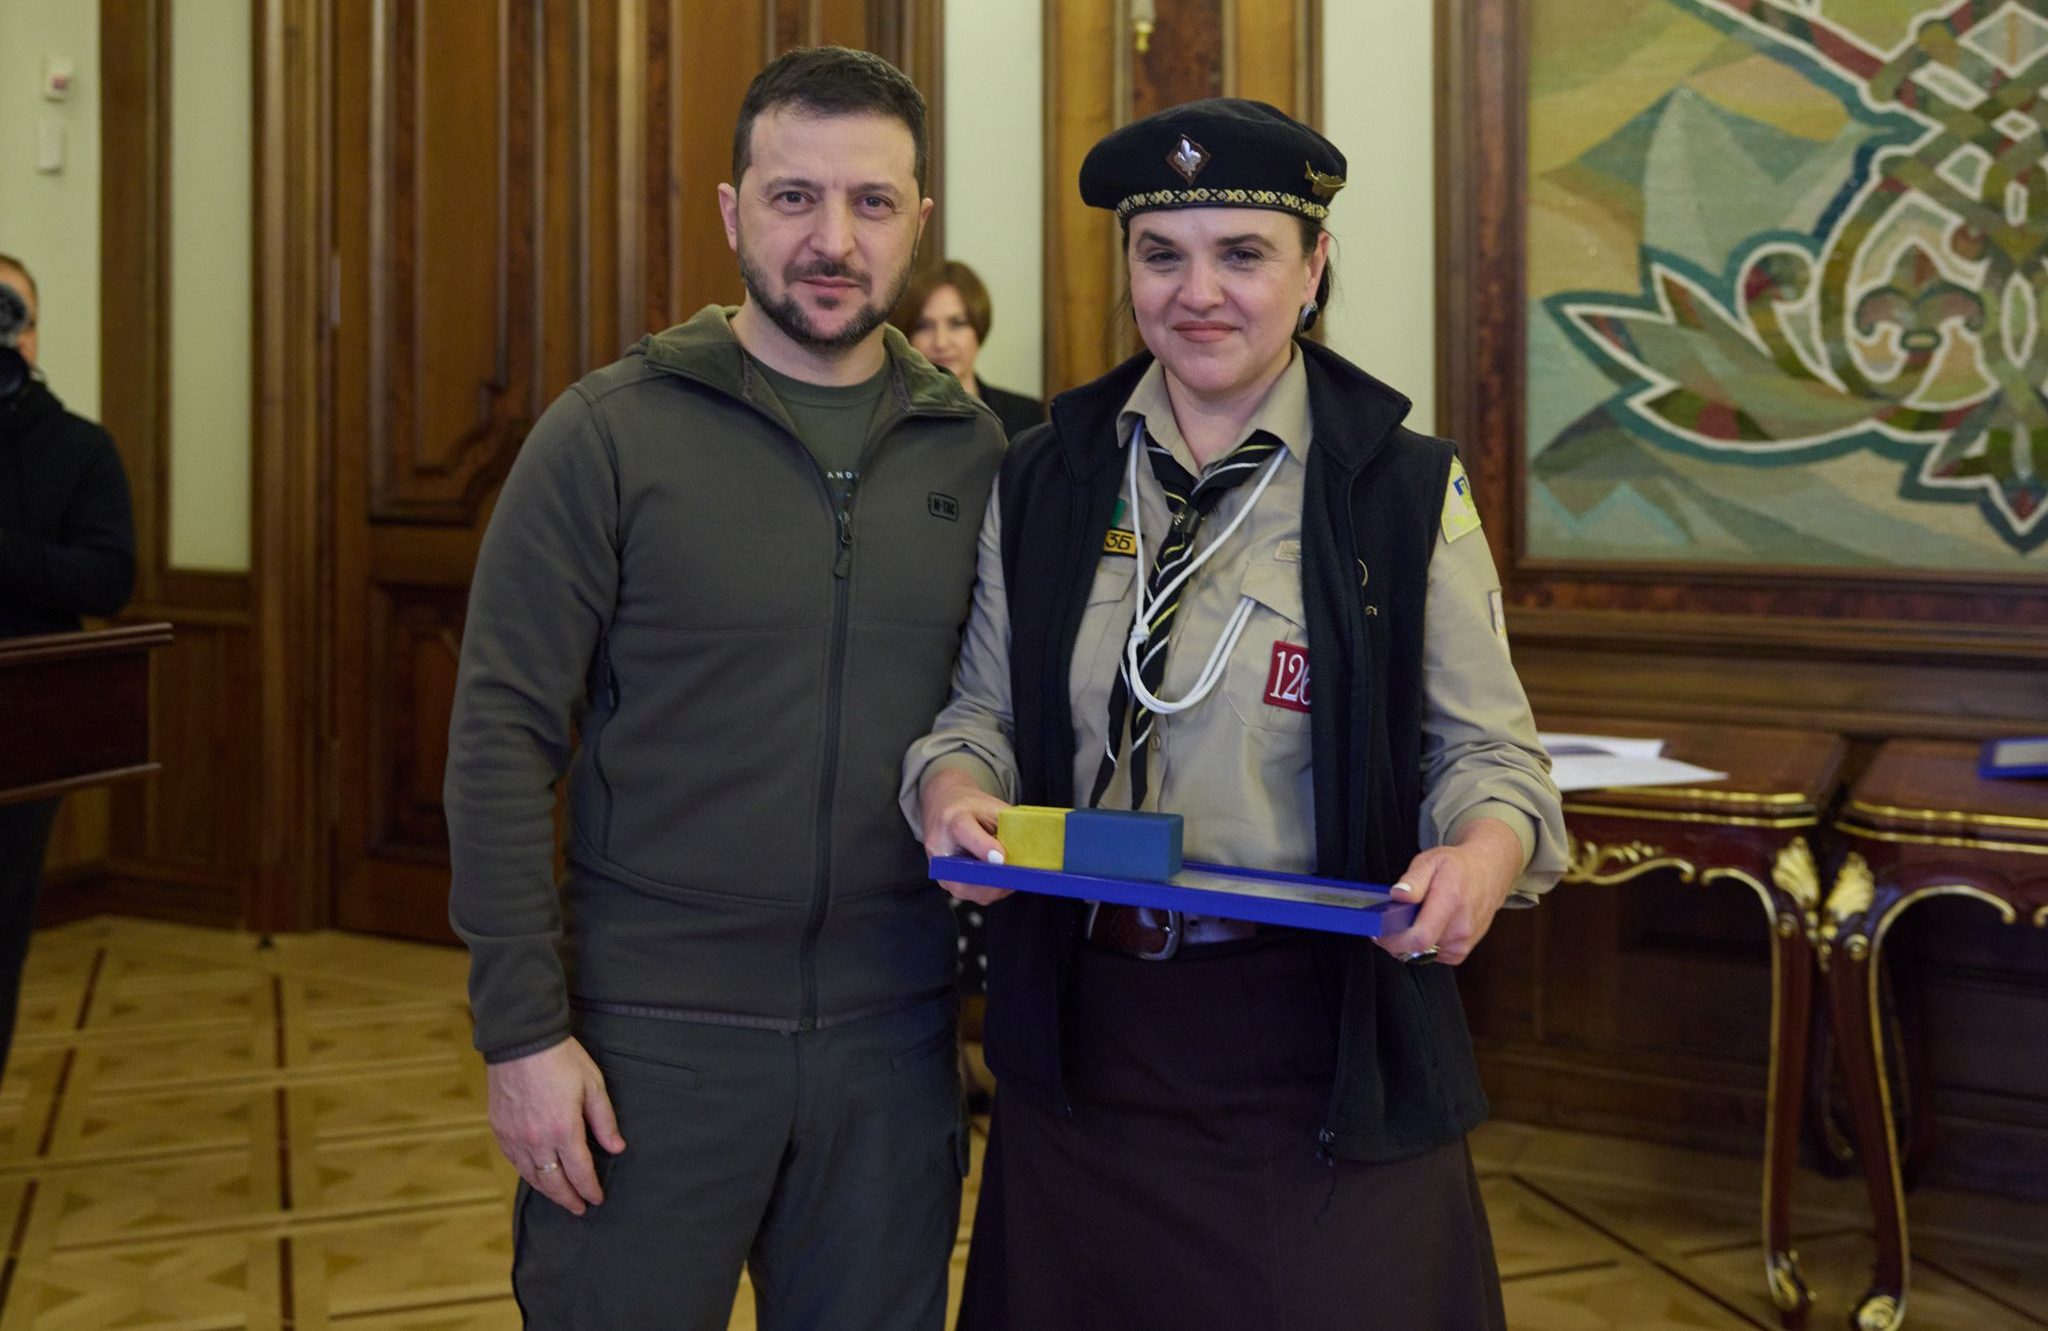 Volodymyr Zelenskyy awarded the Plast member with the “Golden Heart”